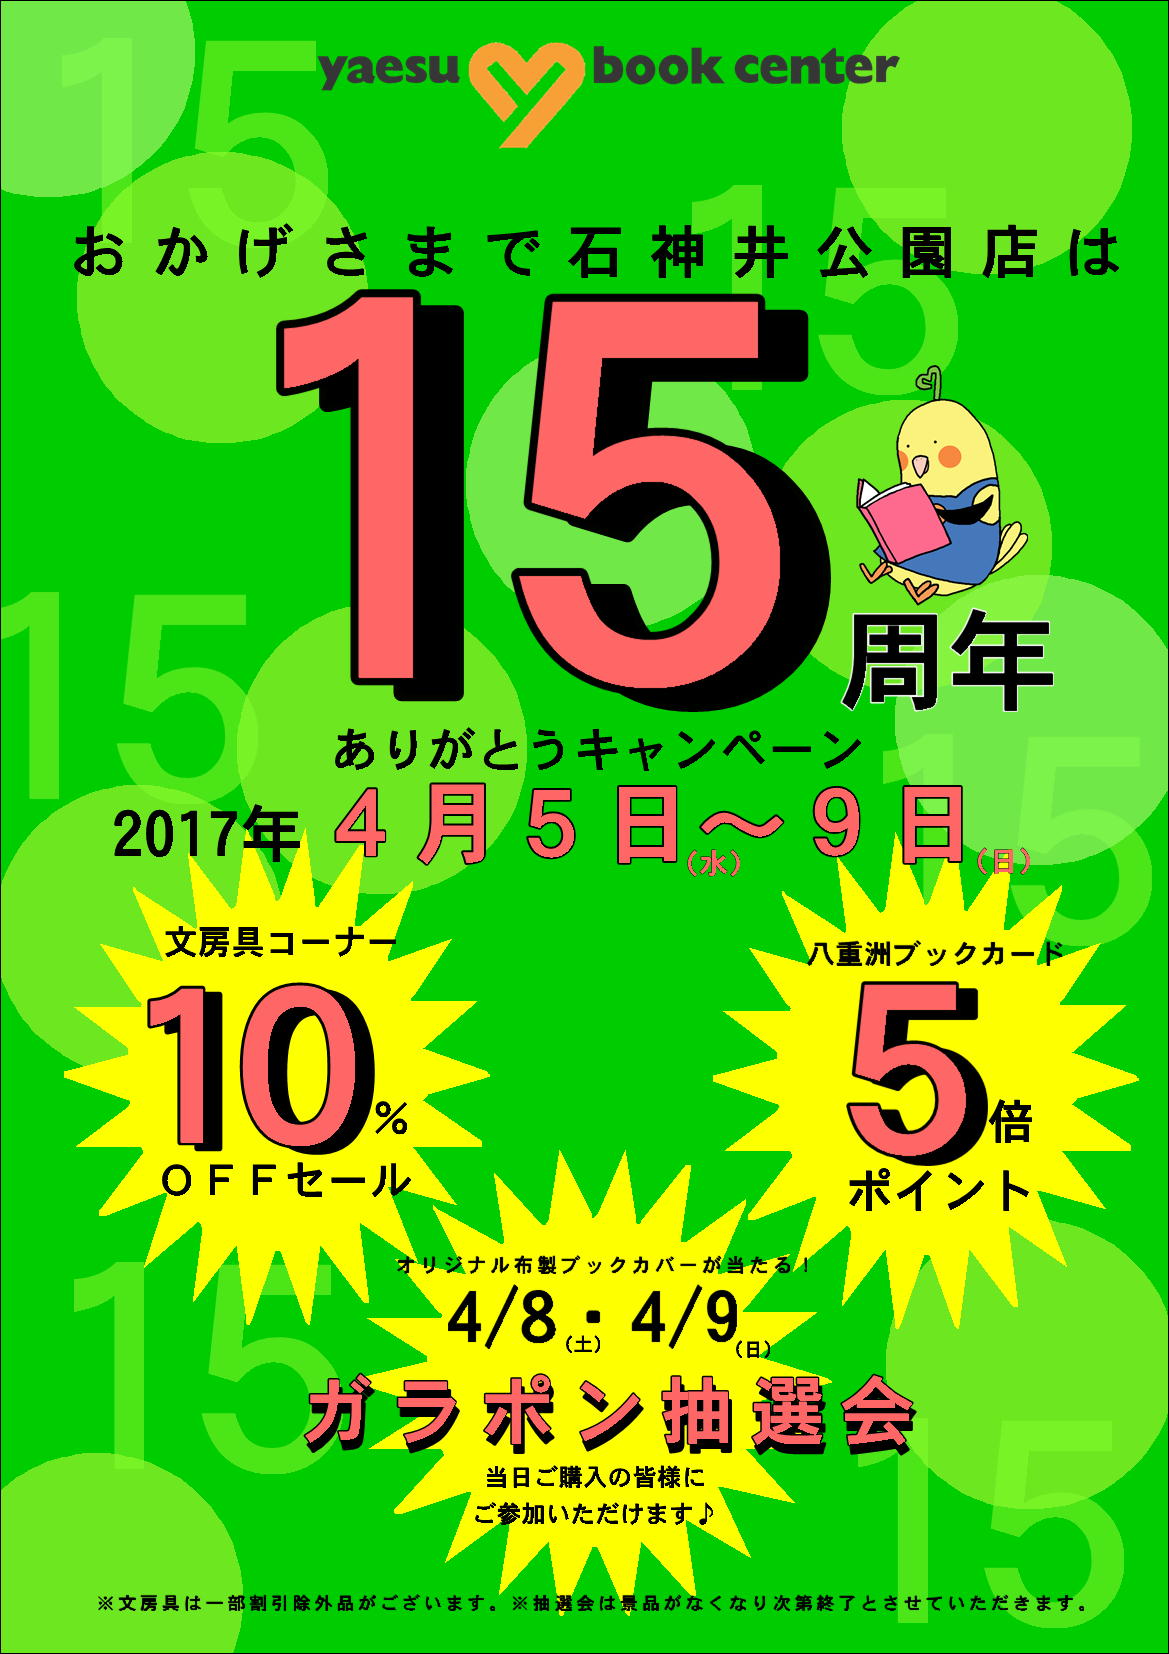 石神井公園店 開店15周年 キャンペーン 八重洲ブックセンター